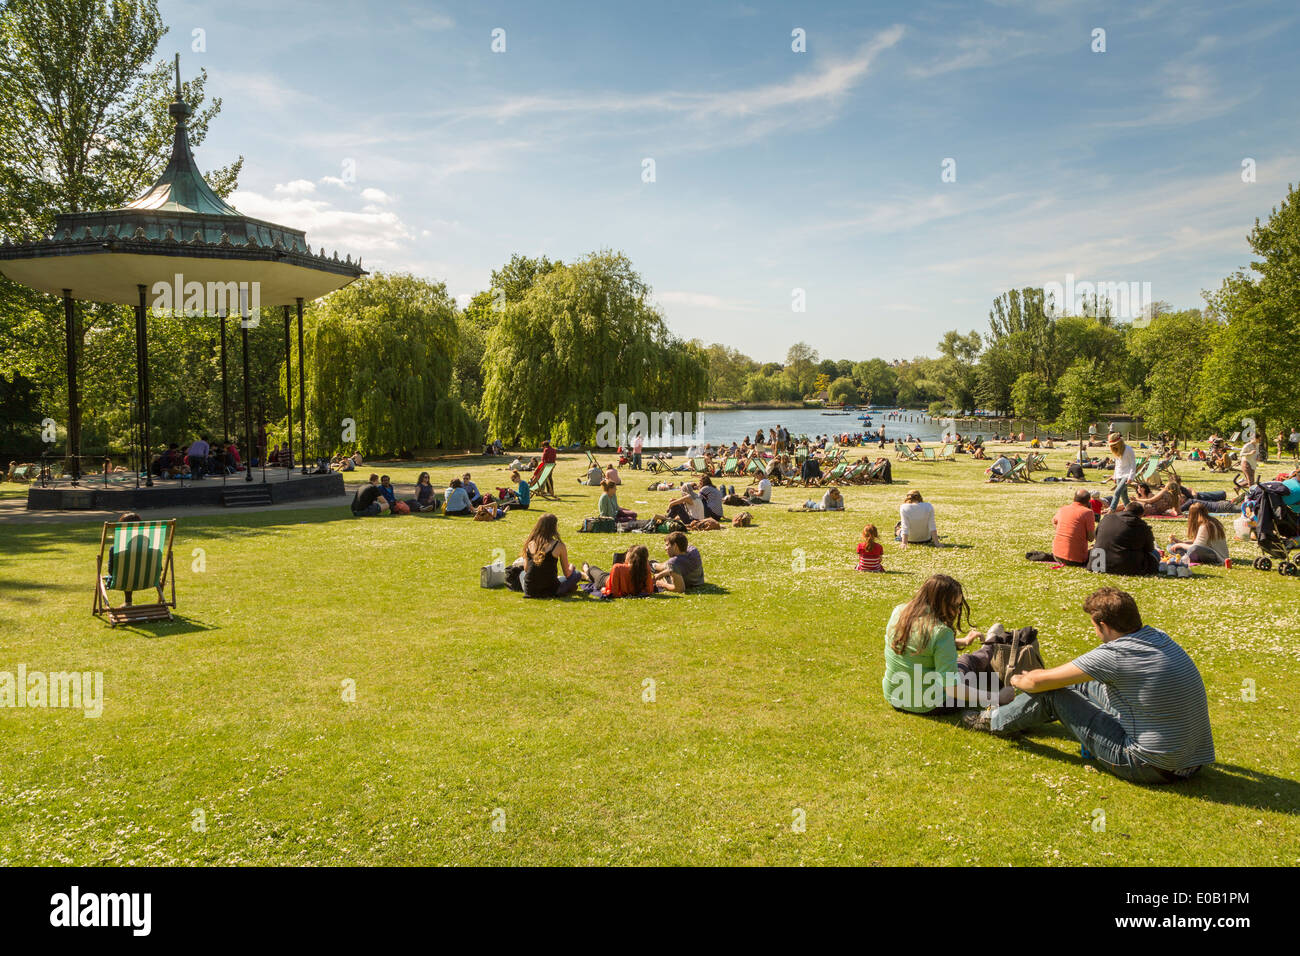 Junge Menschen neben der Band stehen im Sommer Sonnenschein entspannen, Regents Park London England Großbritannien Stockfoto